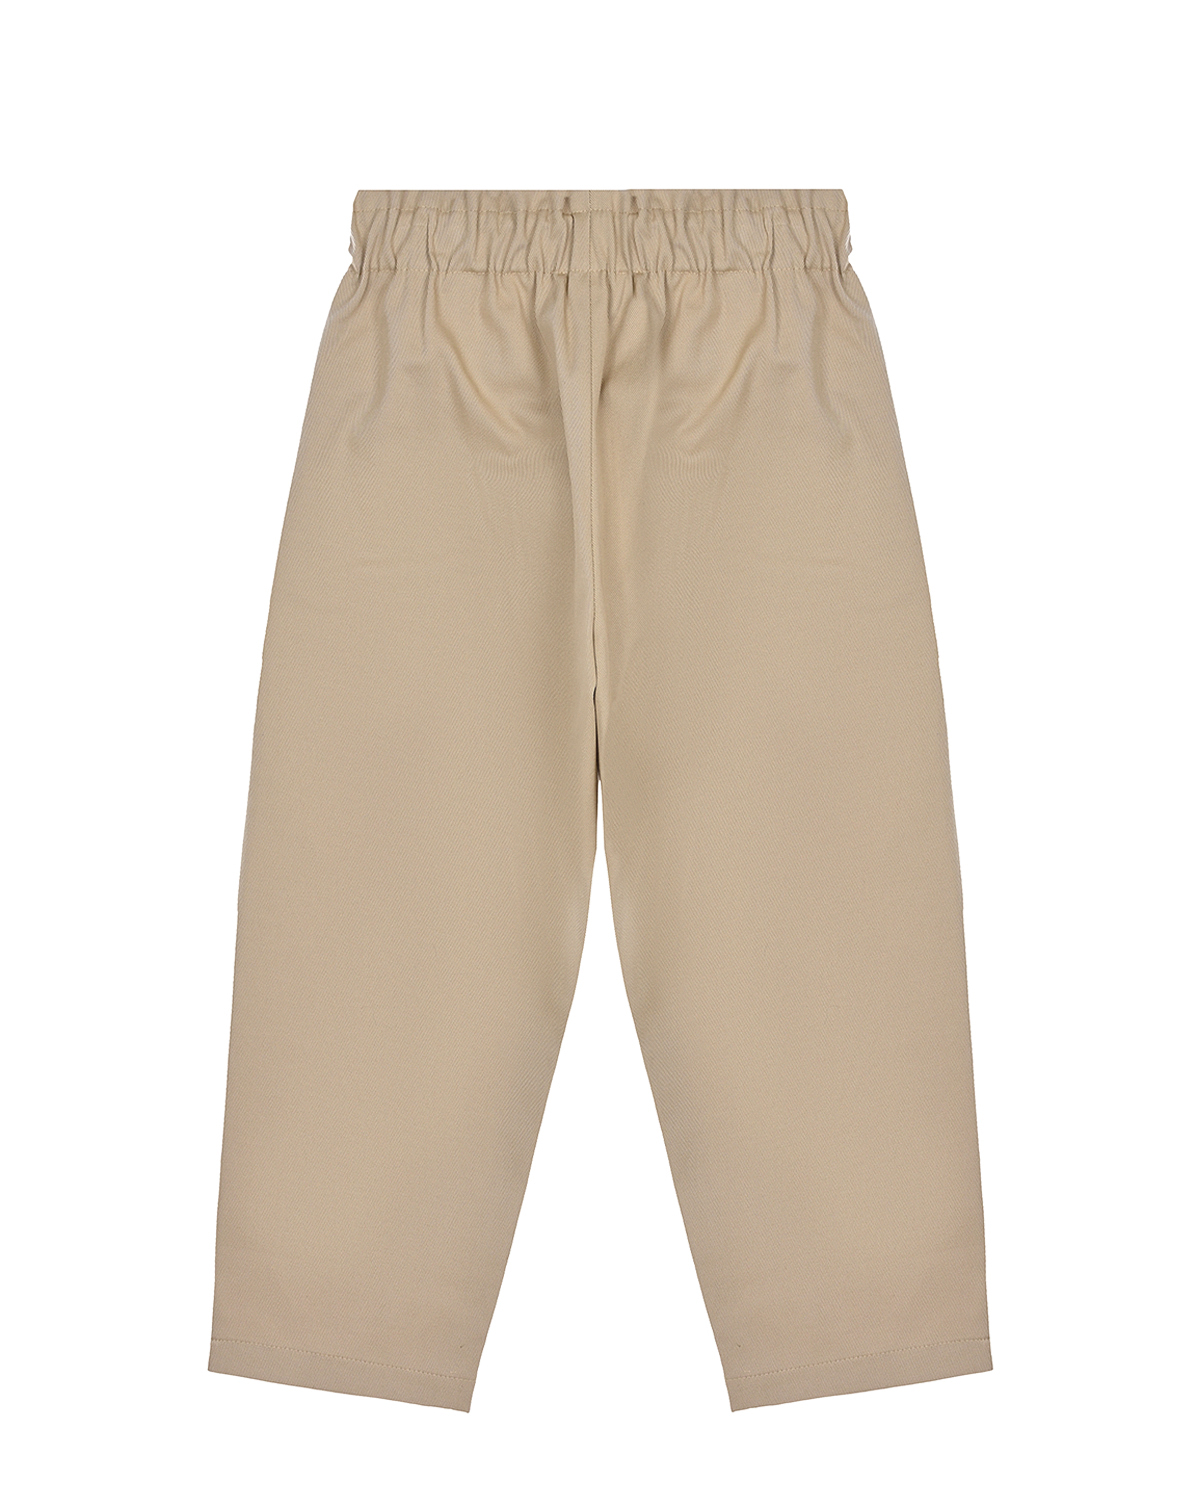 Бежевые брюки с поясом на резинке Paade Mode детские, размер 128, цвет бежевый - фото 2